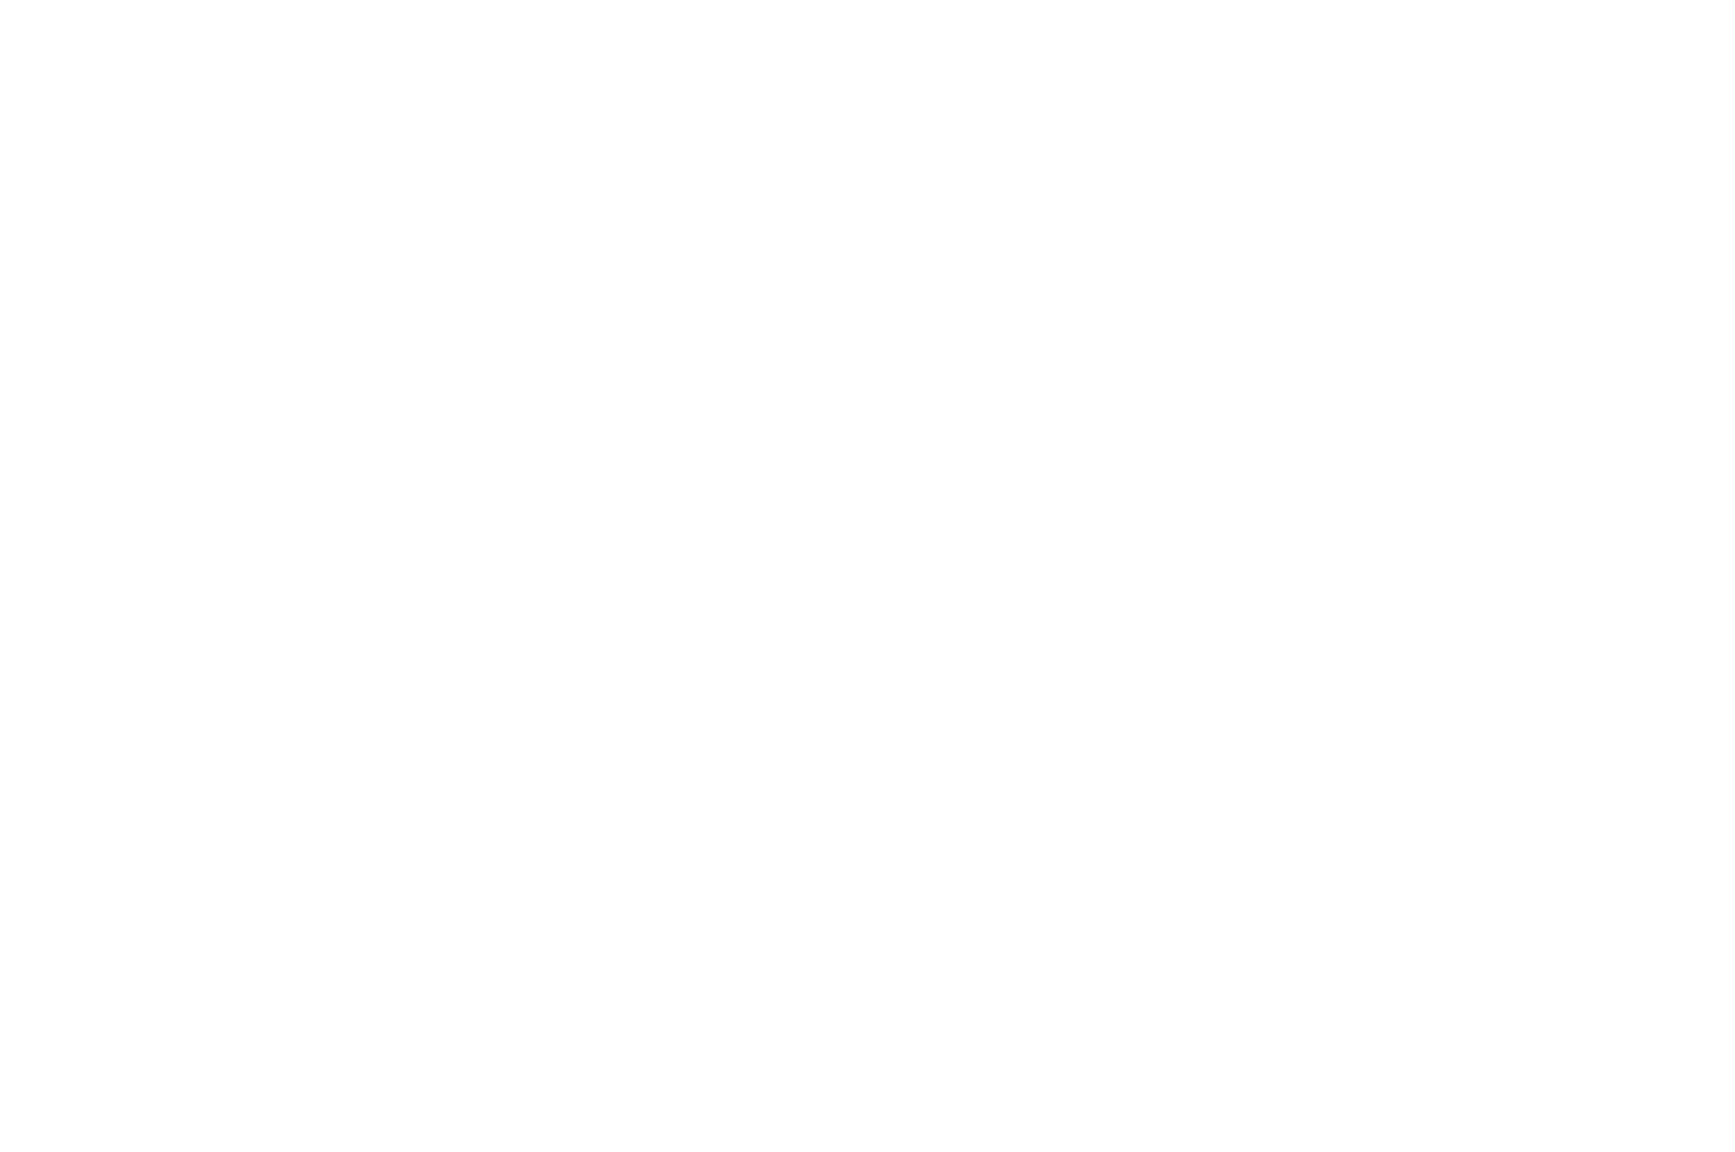 WINNER - BEST ACTRESS - AUCKLAND INTERNATIONAL FILM FESTIVAL 2016 (1).png